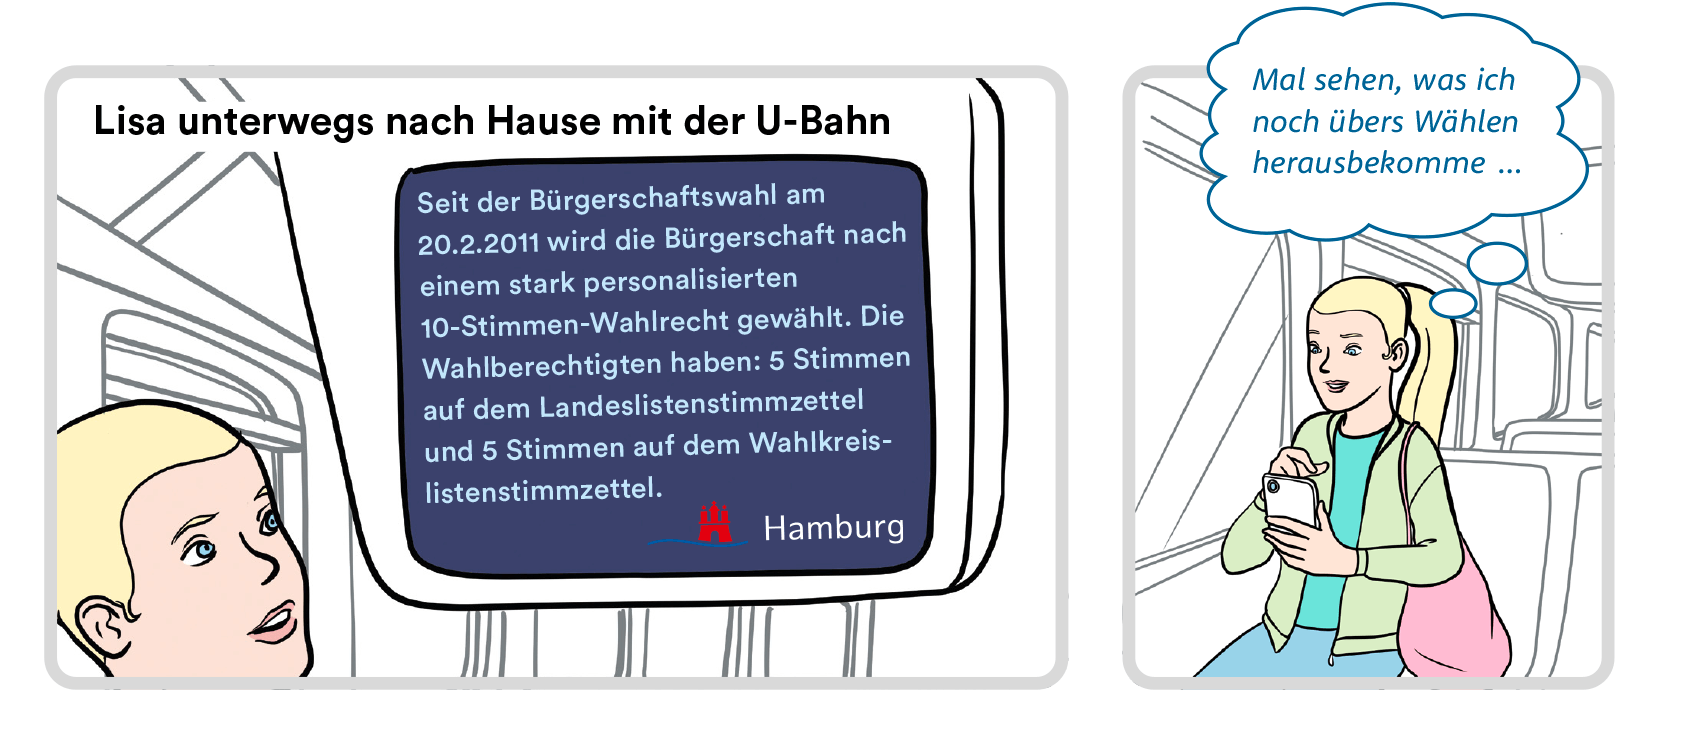 Bild 6: Lisa in der U-Bahn. Lisa liest einen Informationstext auf einem Bildschirm. Unter dem Text steht das Logo der Freien und Hansestadt Hamburg. Bild 7: Lisa schaut auf ihr Handy und denkt nach.